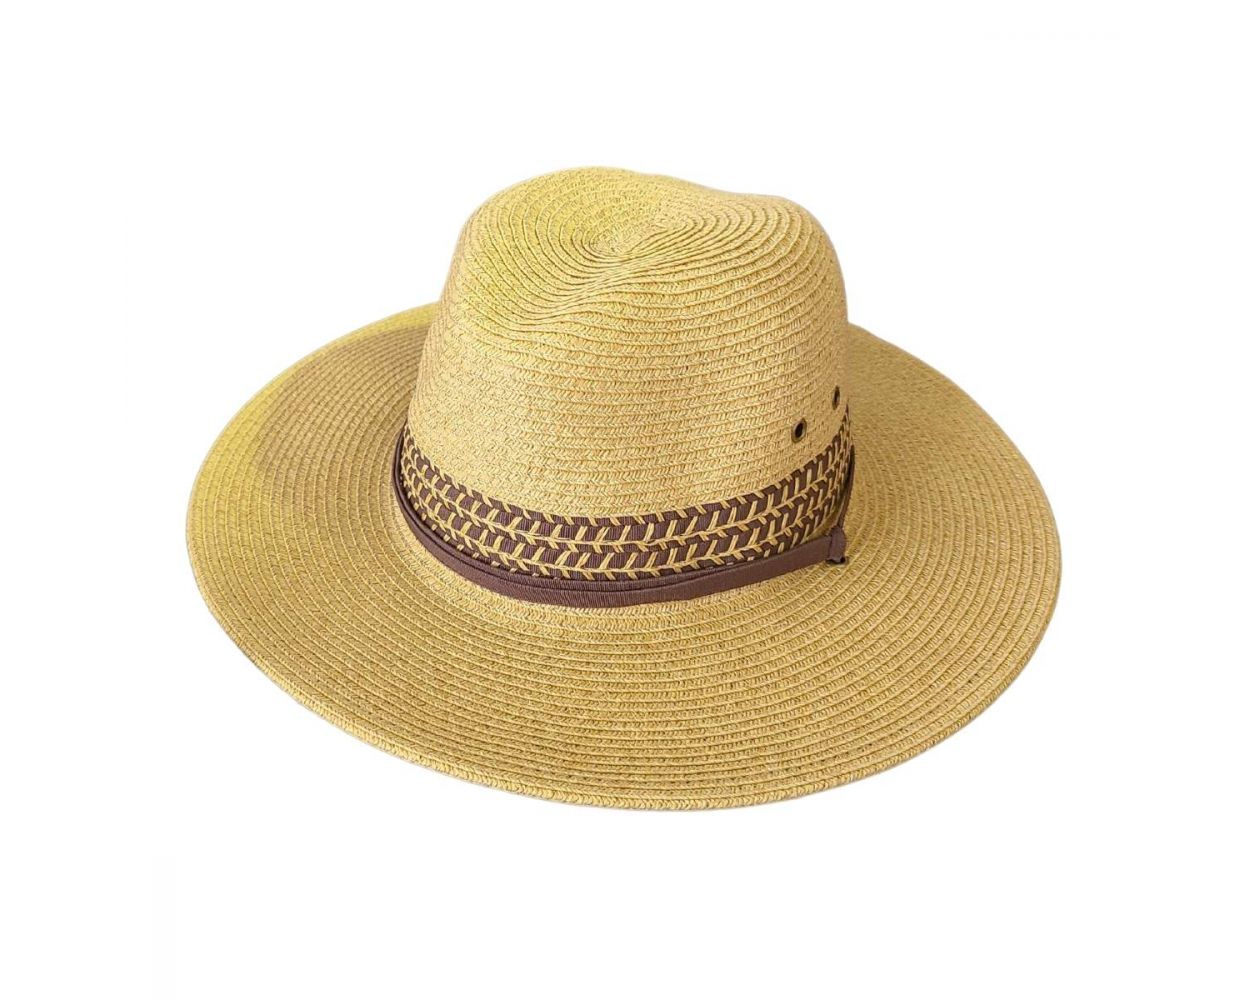 Backspin Men's Ultrabraid Outback Hat